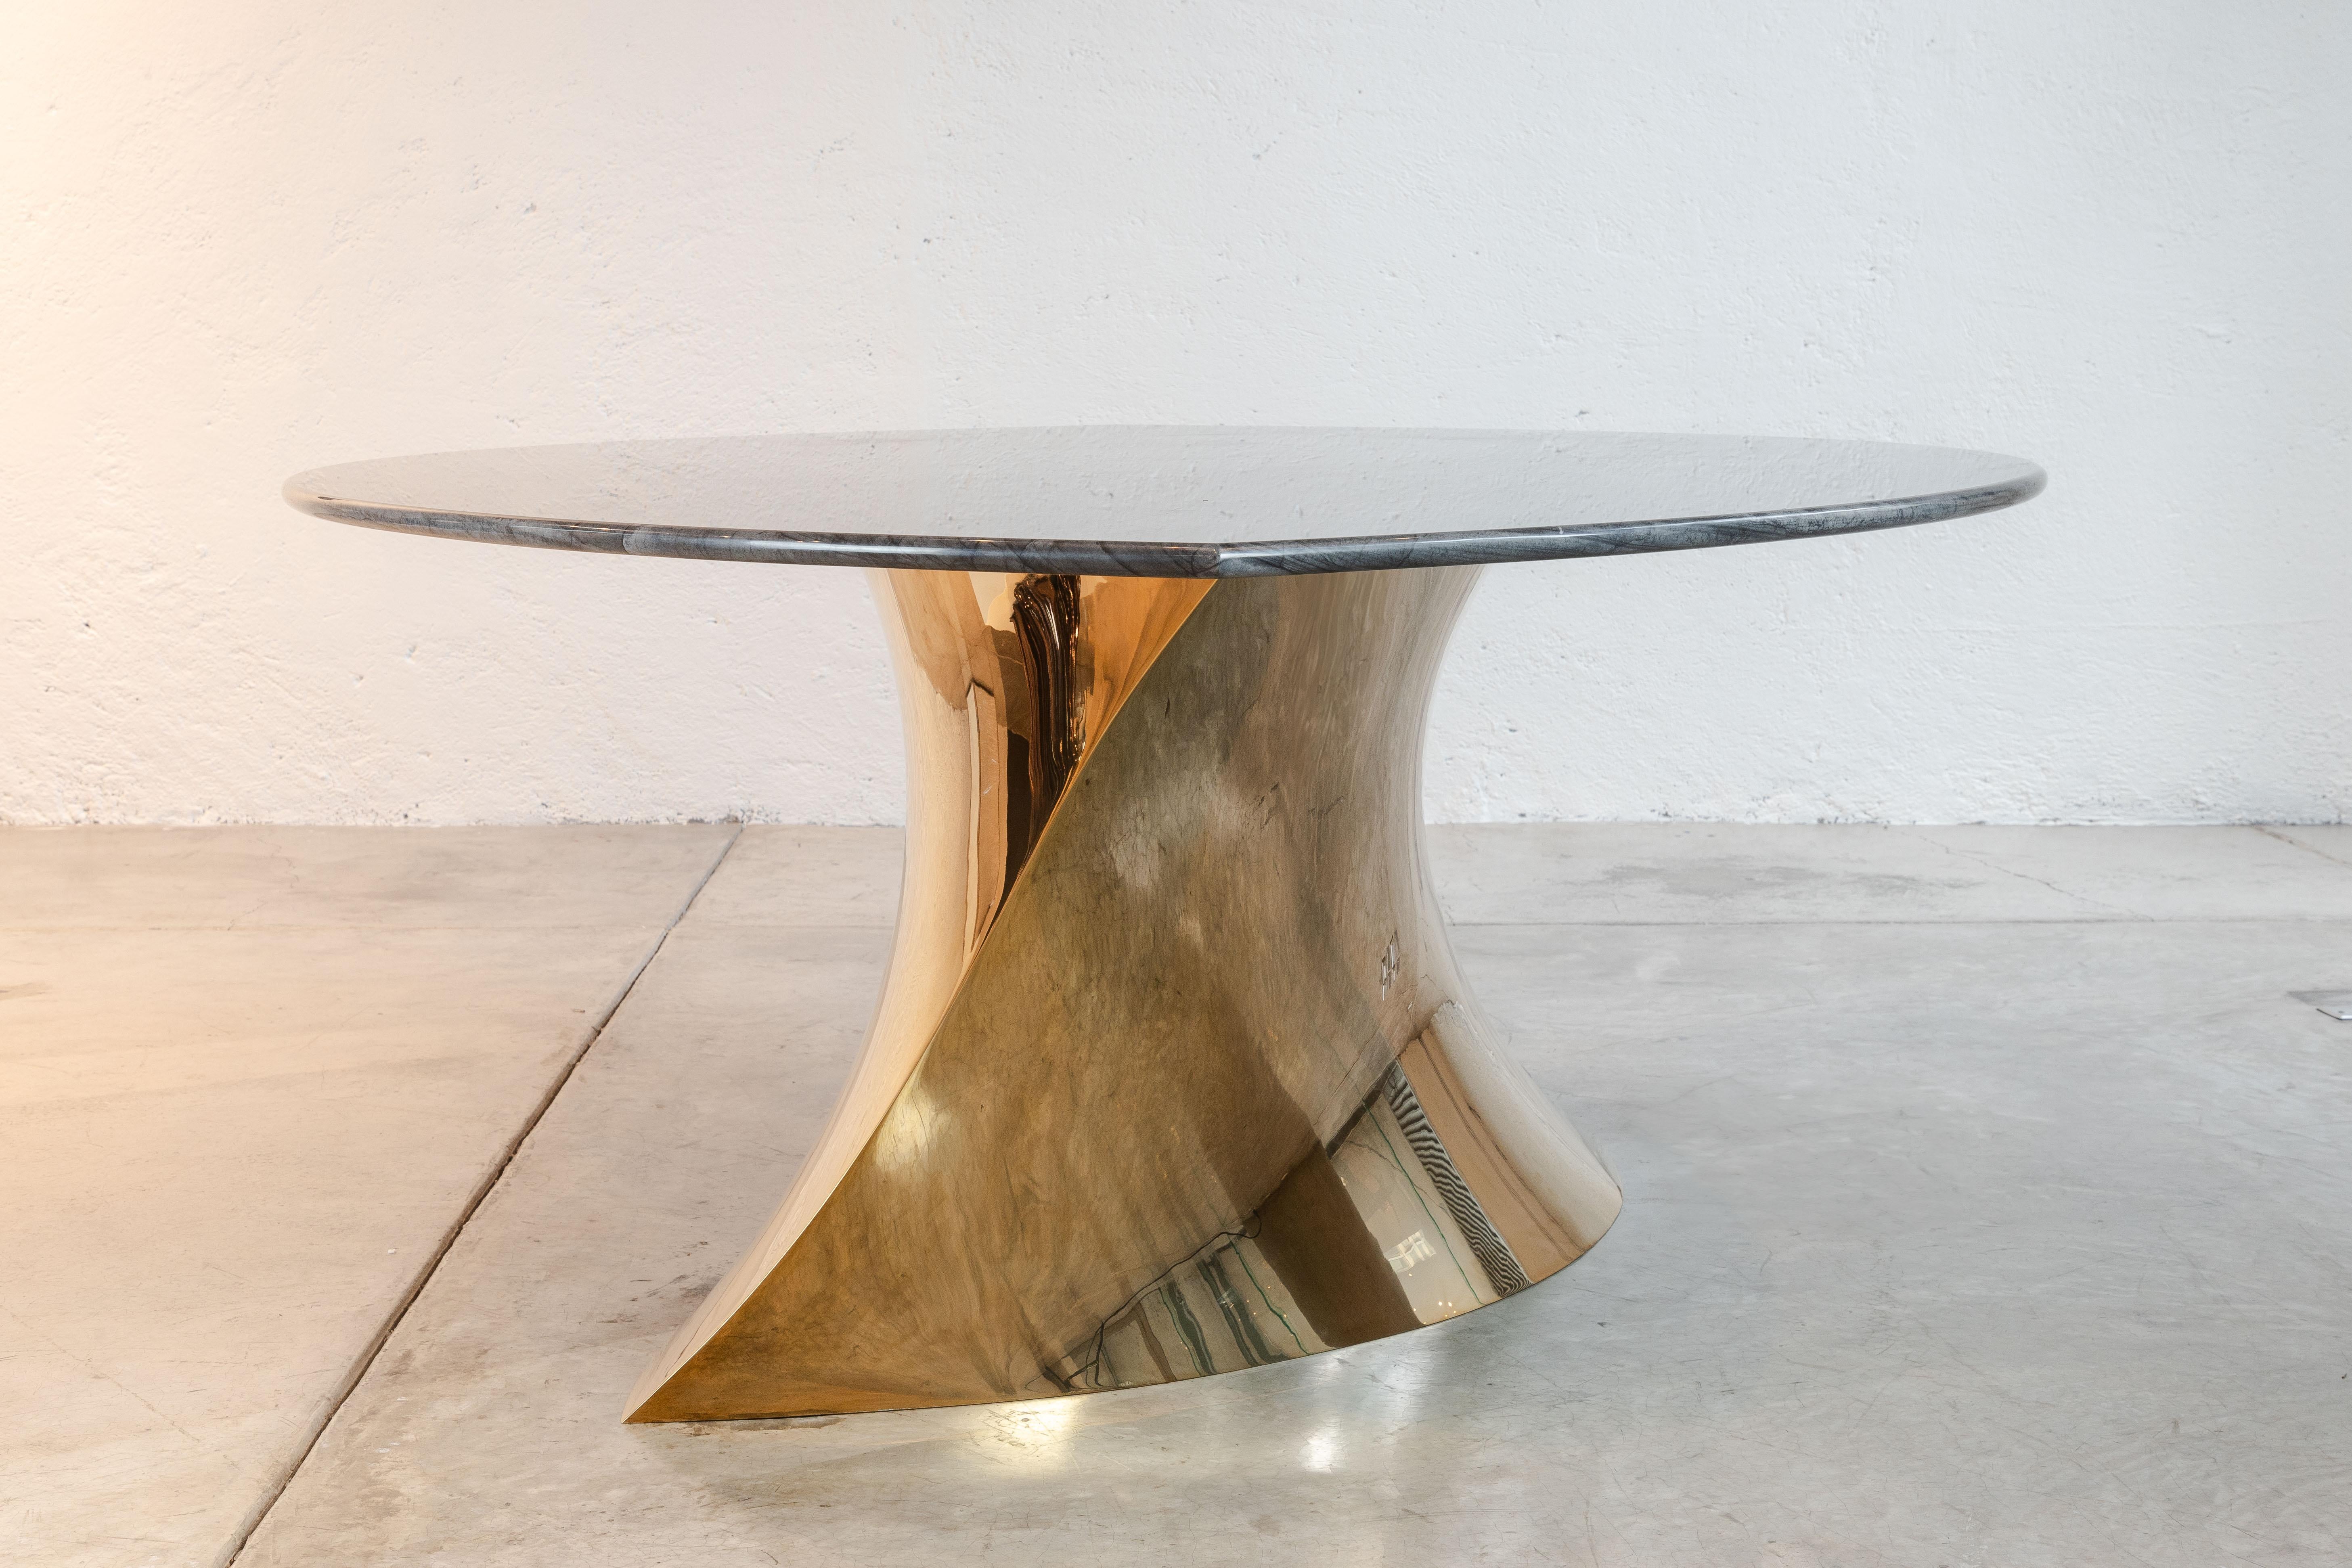 La table de salle à manger Geometra de Katz Studio se présente comme une déclaration minimaliste, combinant l'élégance réfléchissante d'une base en bronze poli avec la beauté robuste du granit Adamantium. Sa forme géométrique et sa finition miroir